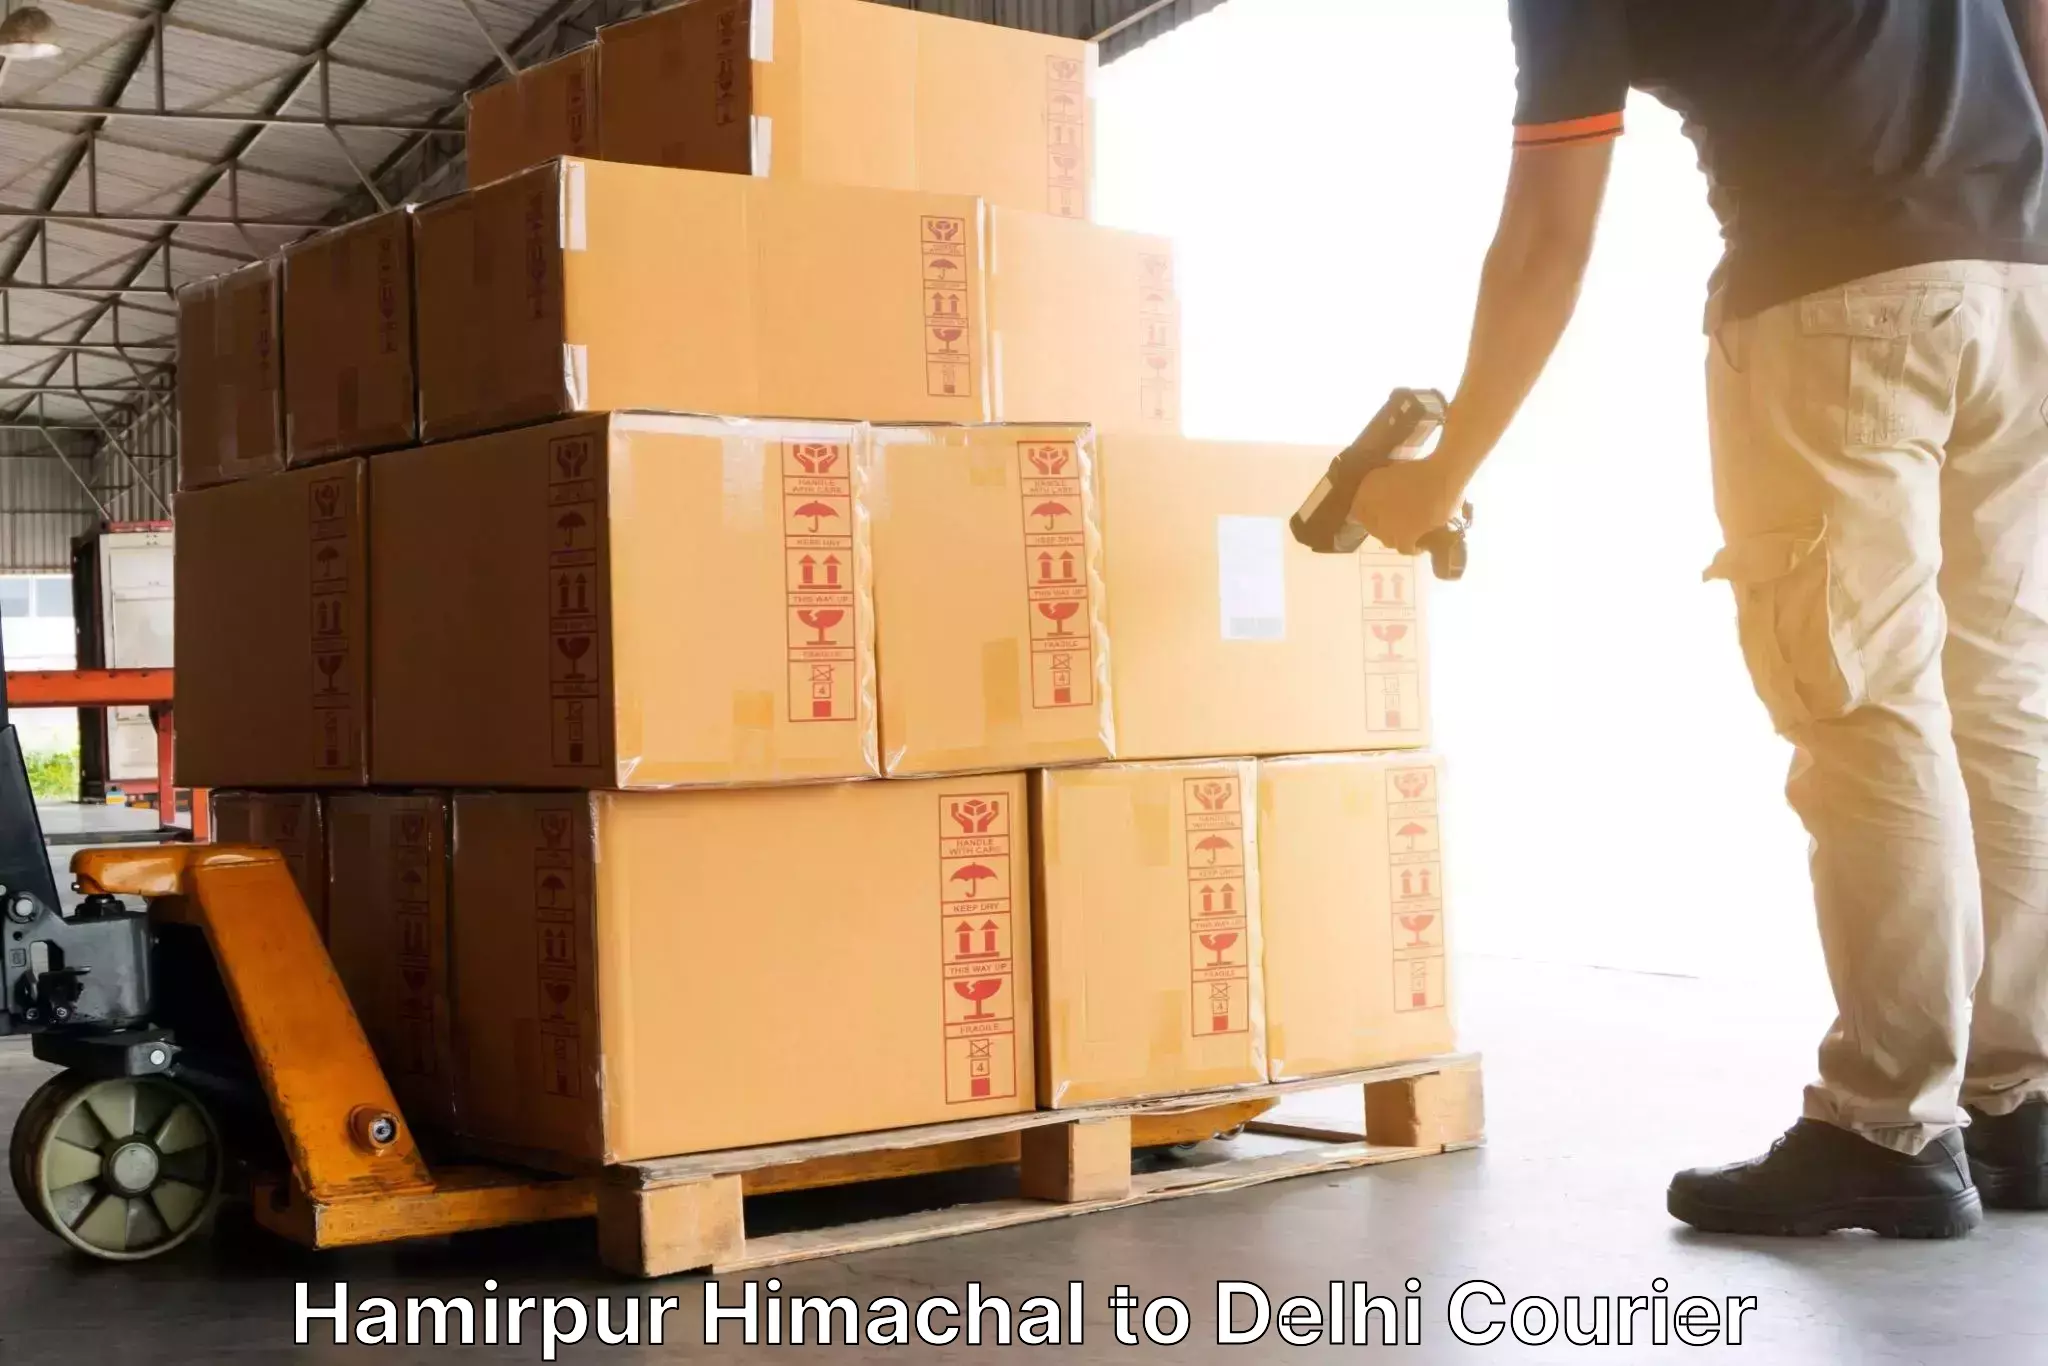 Efficient order fulfillment Hamirpur Himachal to NIT Delhi